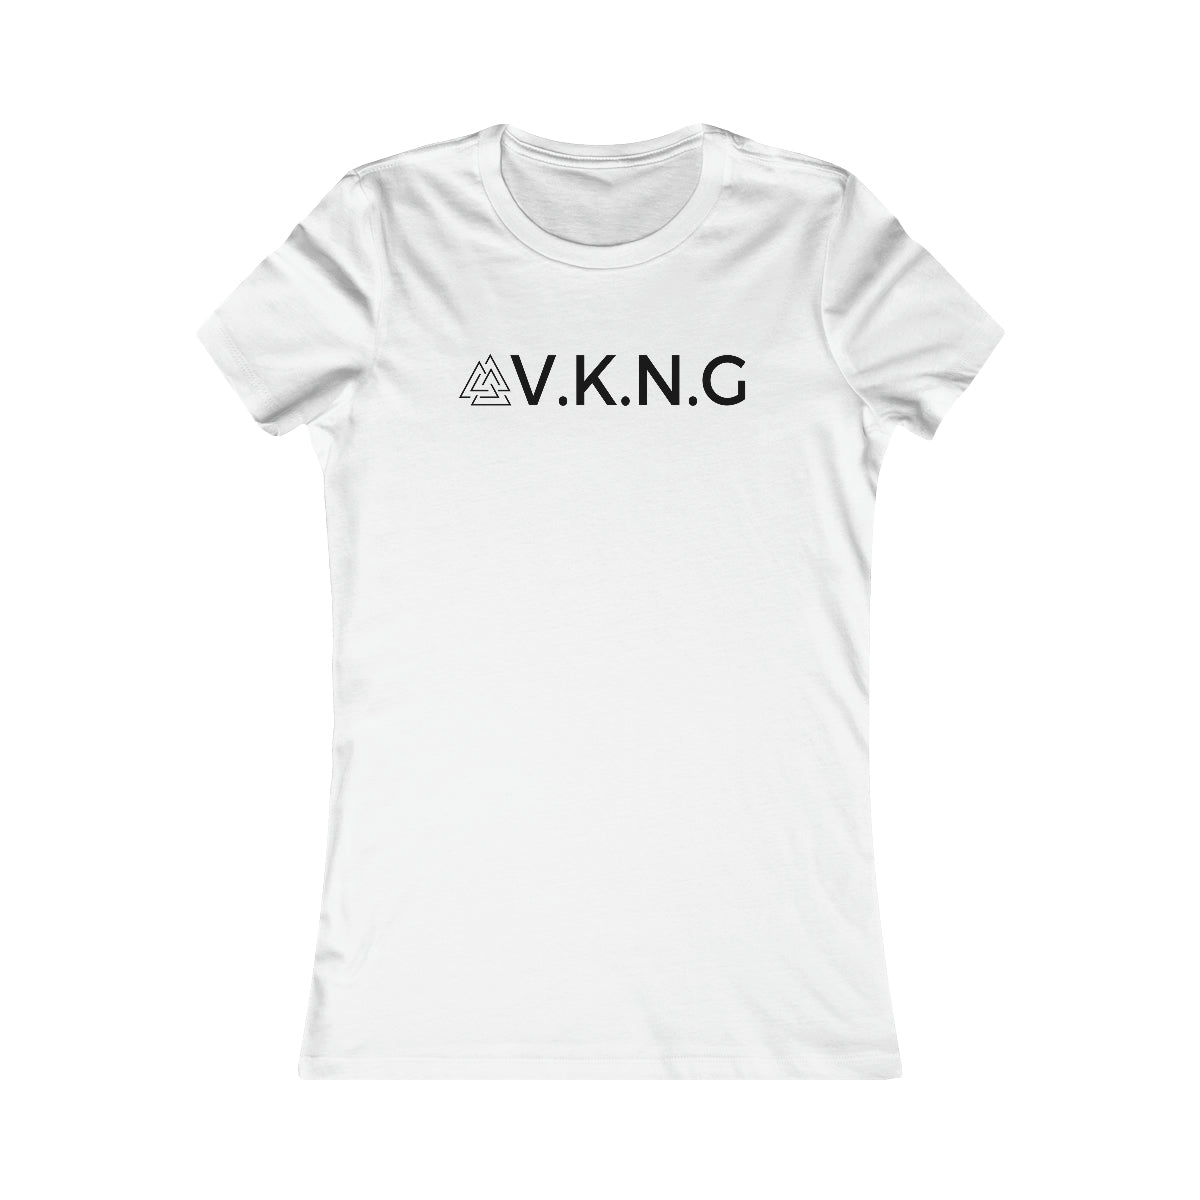 Printify T-Shirt "BE PROUD" V.K.N.G™ T-shirt Girly Cut